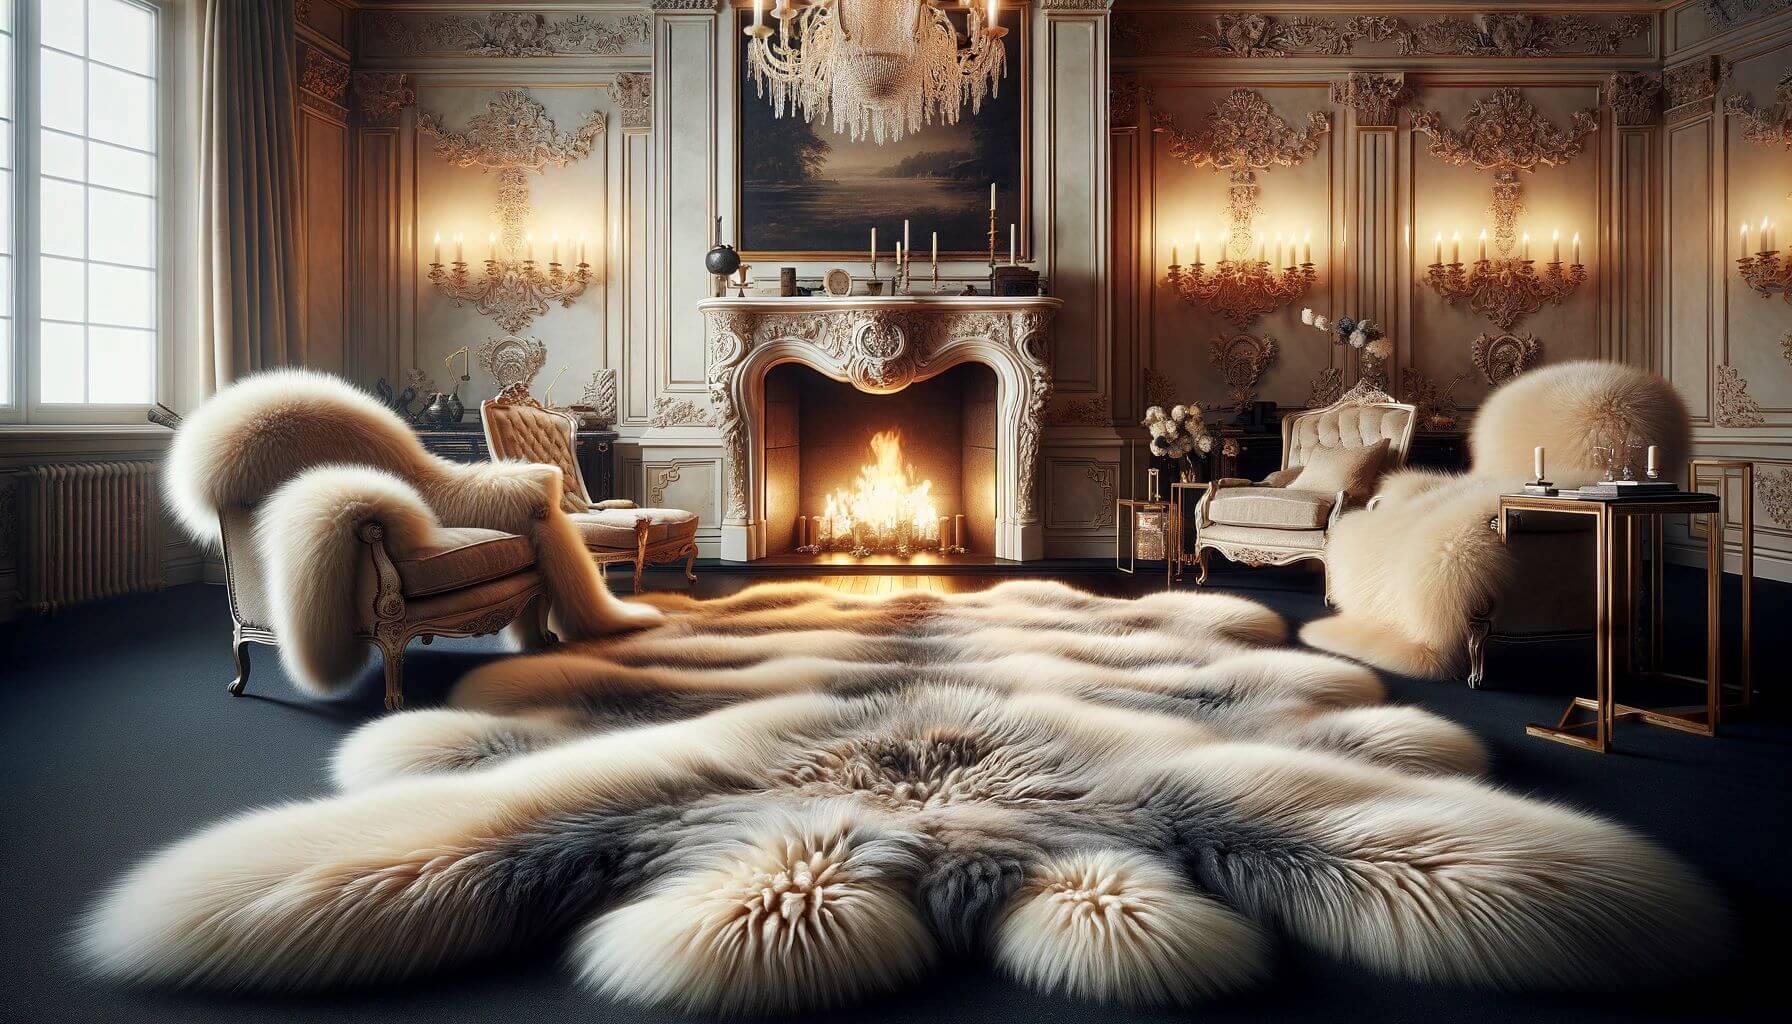 Sheekskin rugs cozy fireplace